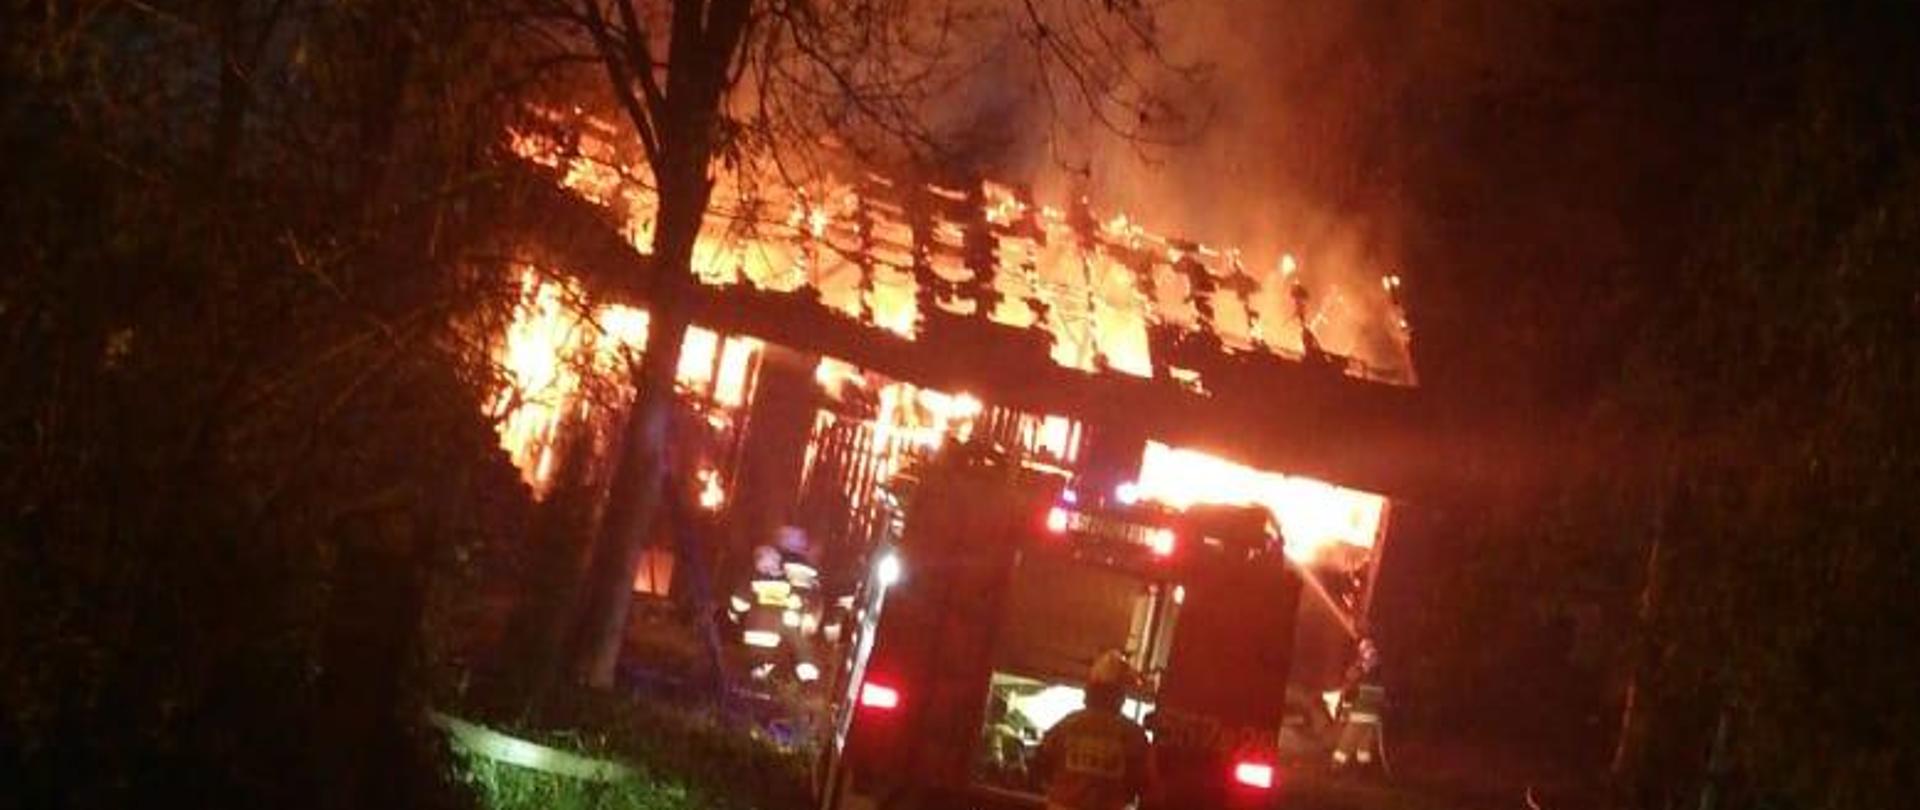 Zdjęcie przedstawia objętą ogniem stodołę oraz działania gaśnicze prowadzone przez strażaków